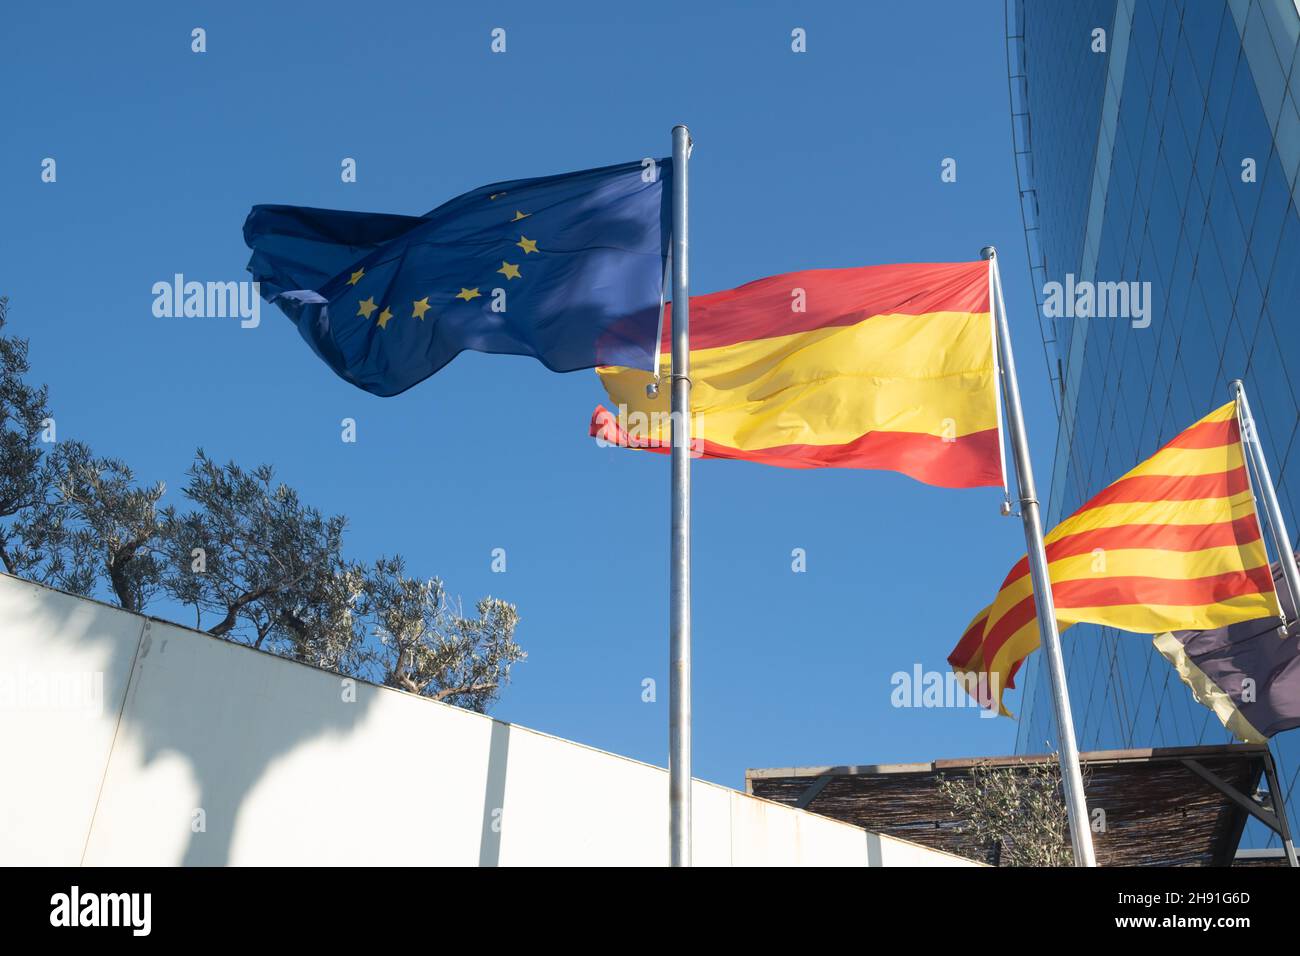 Flaggen der EU, Spaniens und Kataloniens winken am Himmel. Stockfoto